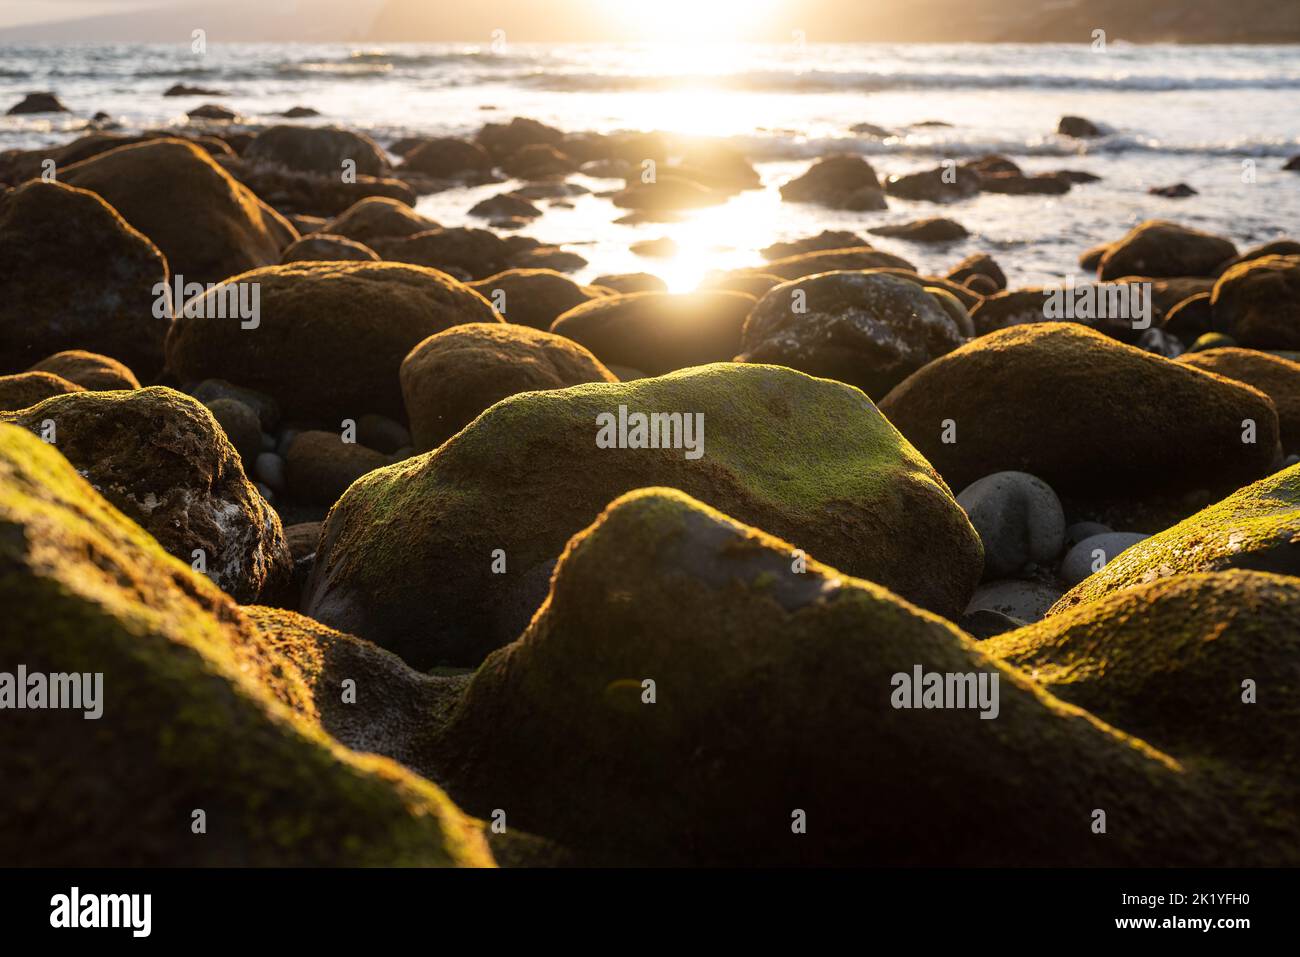 Verdes rocas marinas cubiertas de algas al atardecer. Luz dorada en el agua del océano Foto de stock